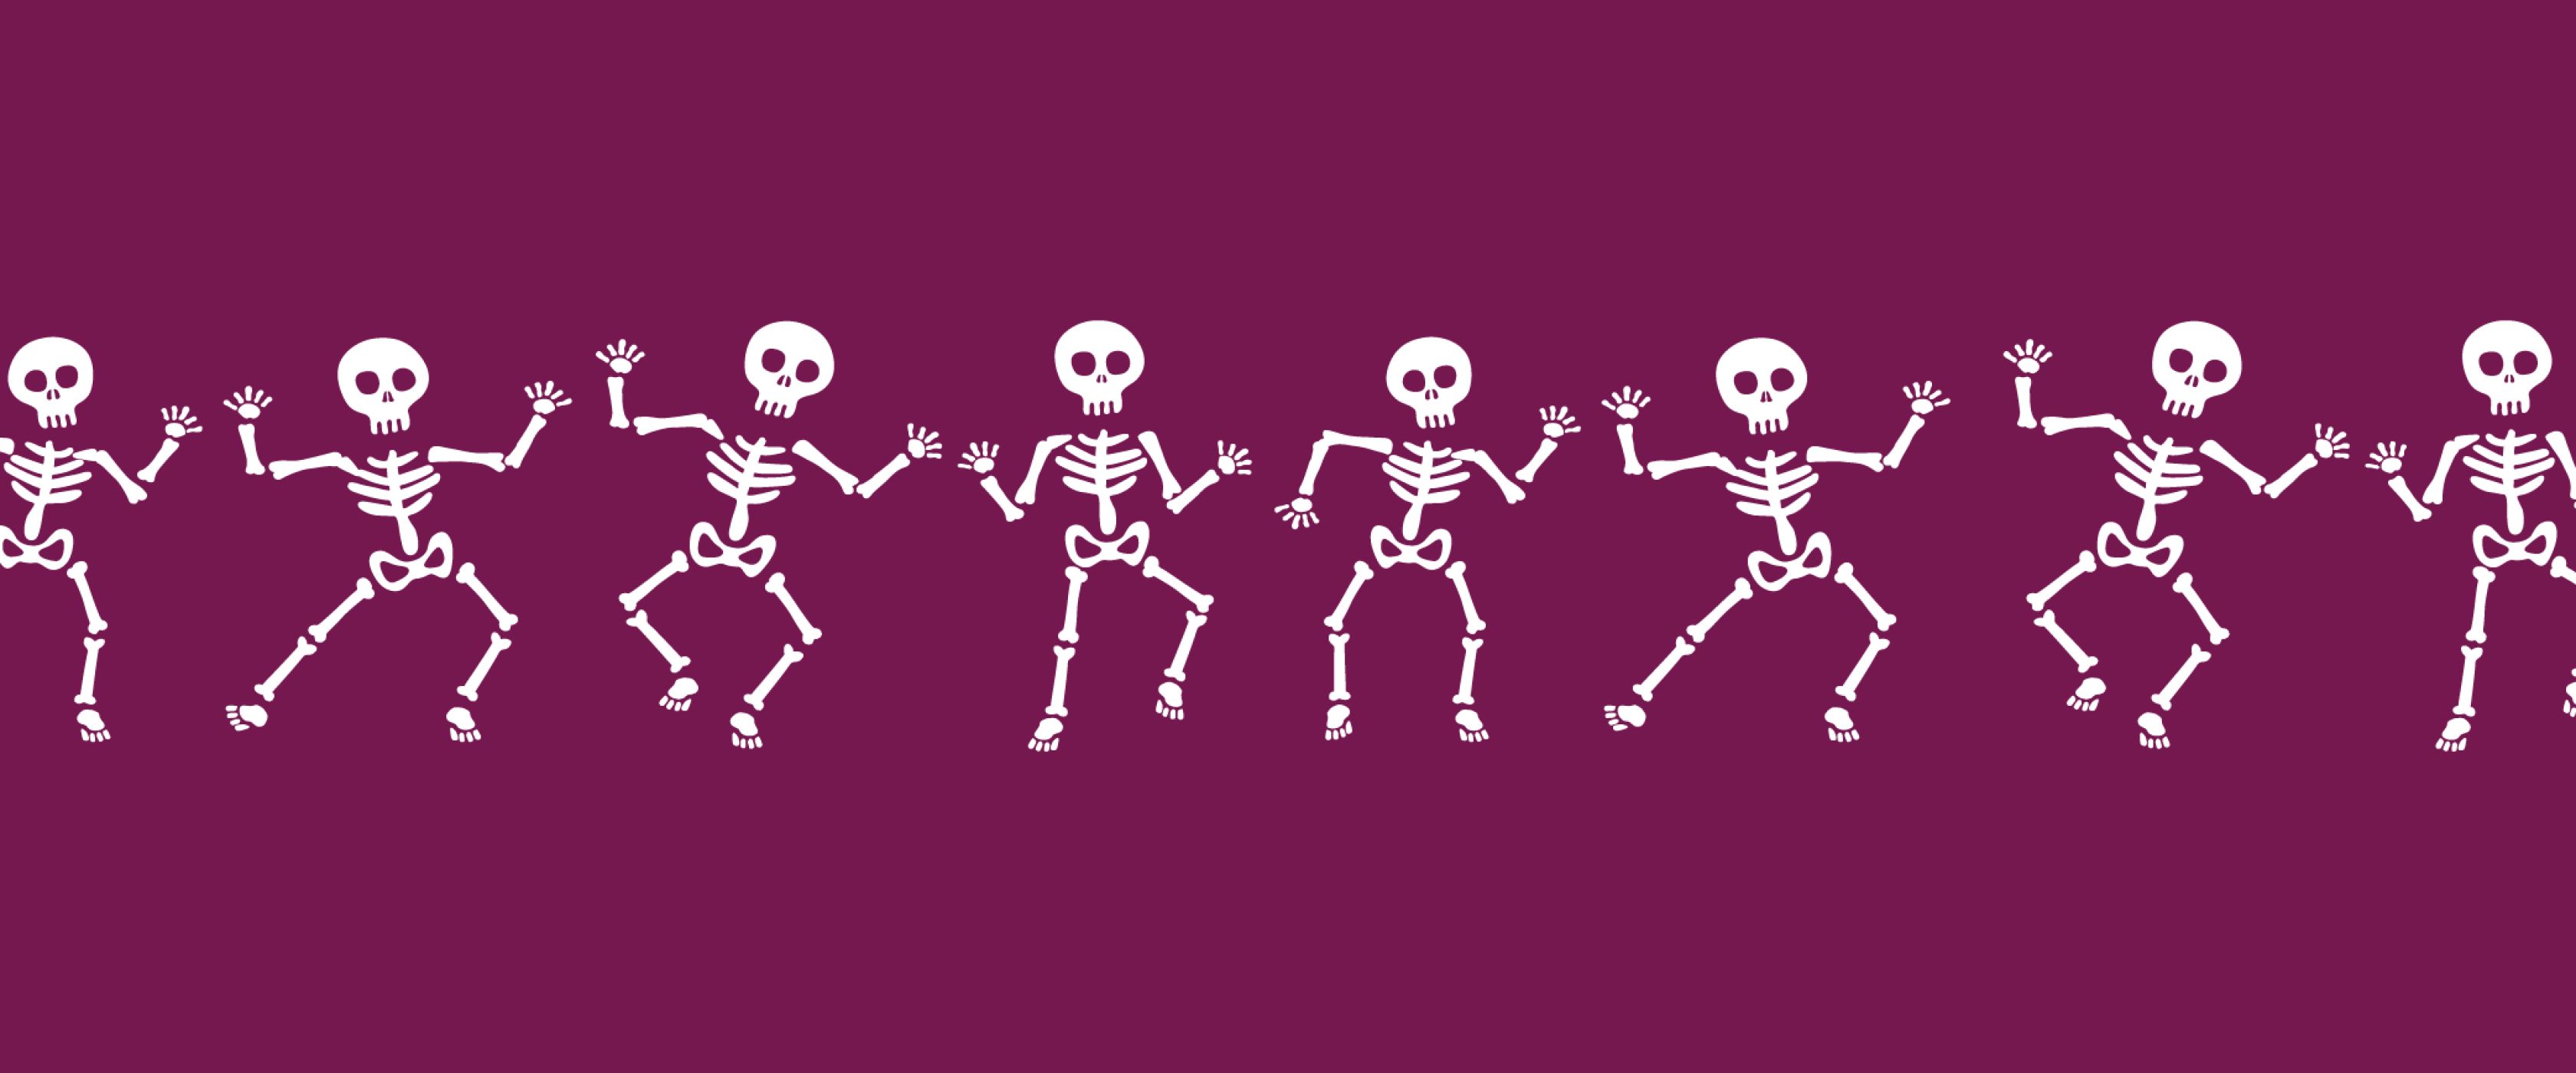 Skeletons Dancing